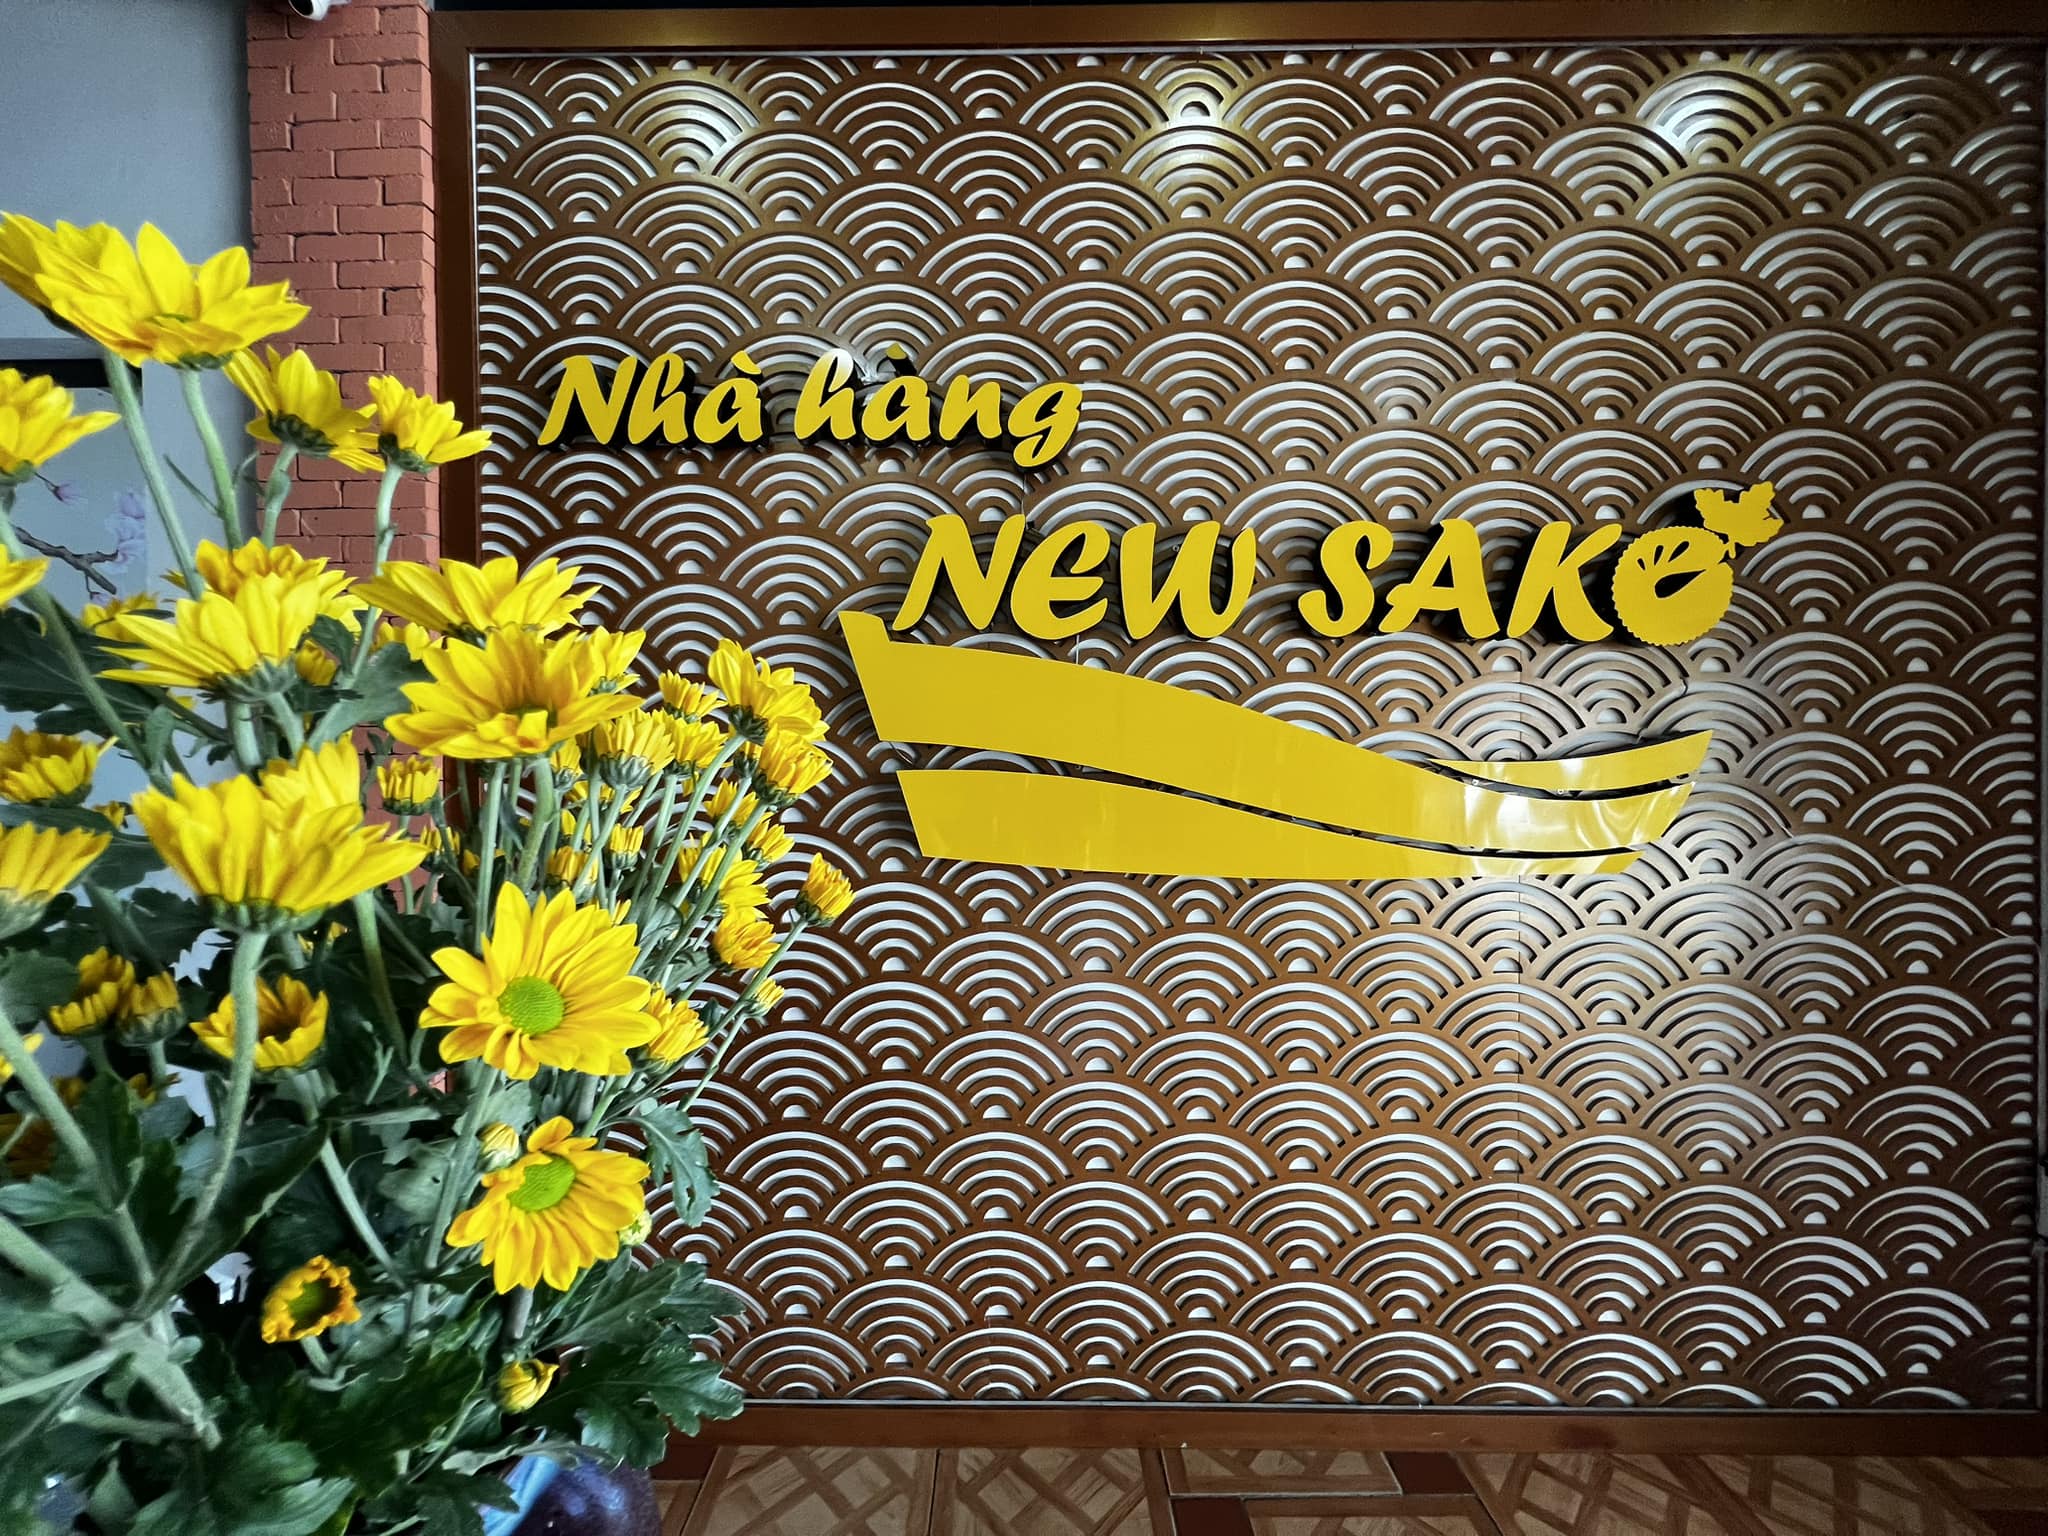 Nhà hàng New sake